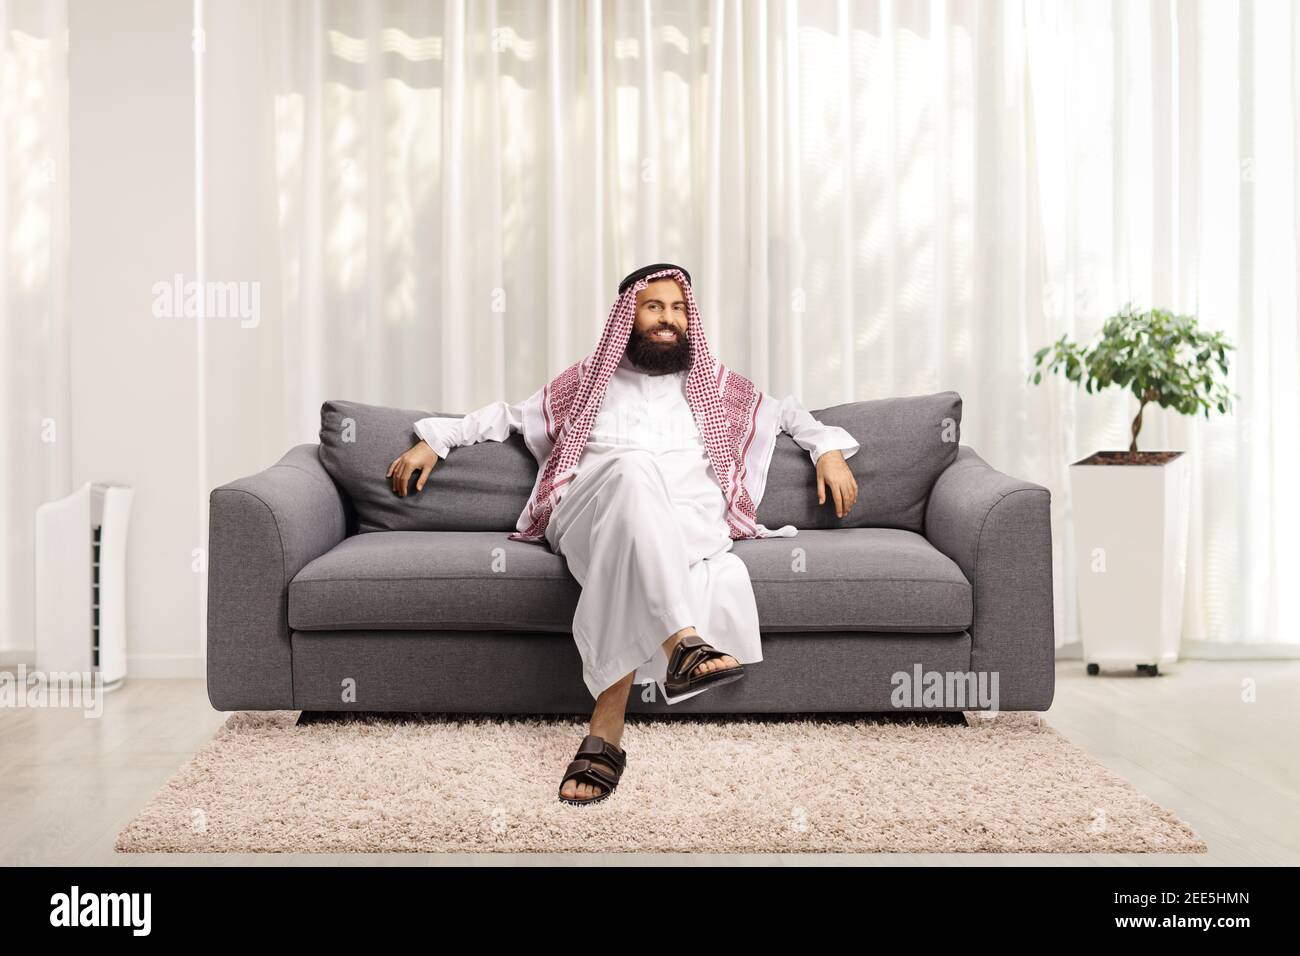 Saudi arab man sitting on a gray sofa at home and looking at camera Stock Photo